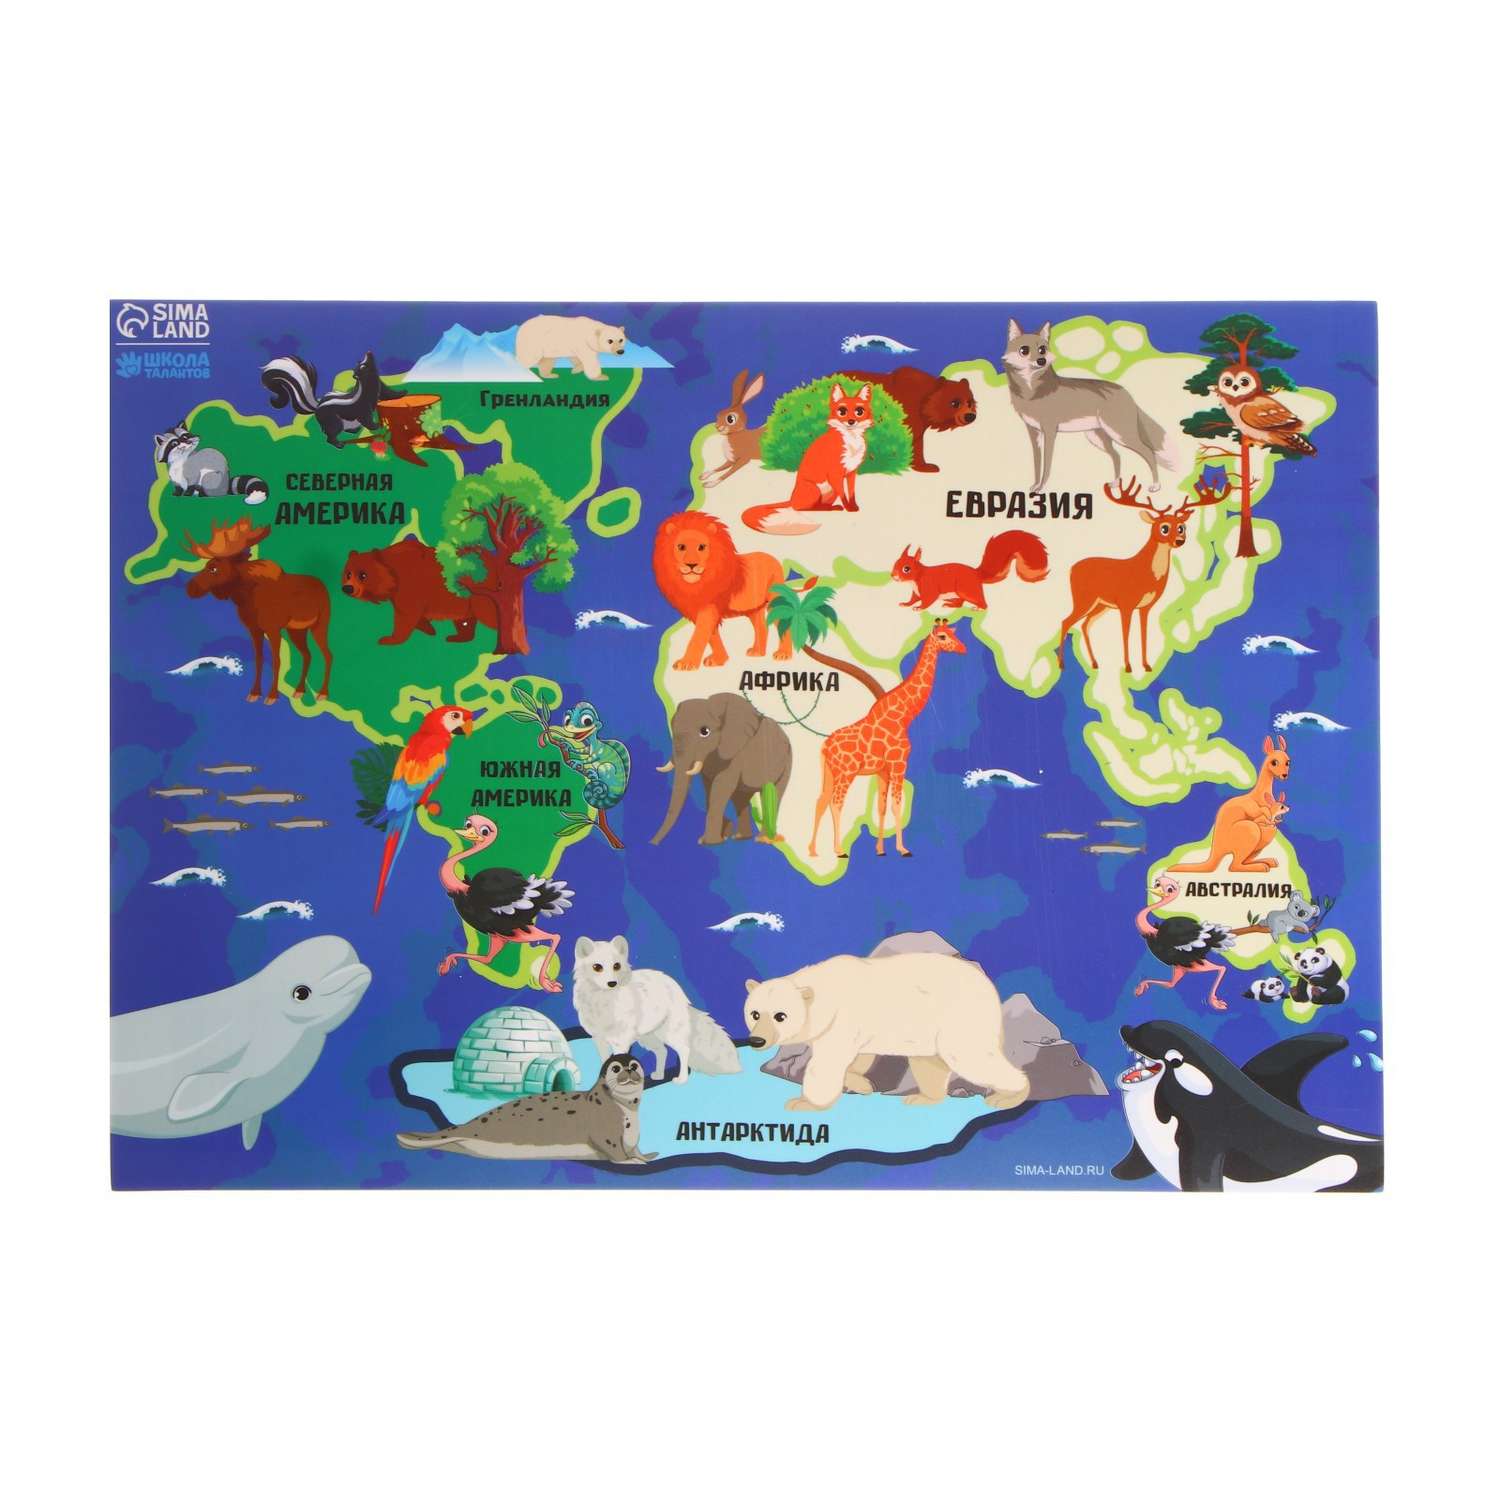 Коврик Школа Талантов для лепки с нескользящим покрытием «Карта мира» 29.7х21 см - фото 1